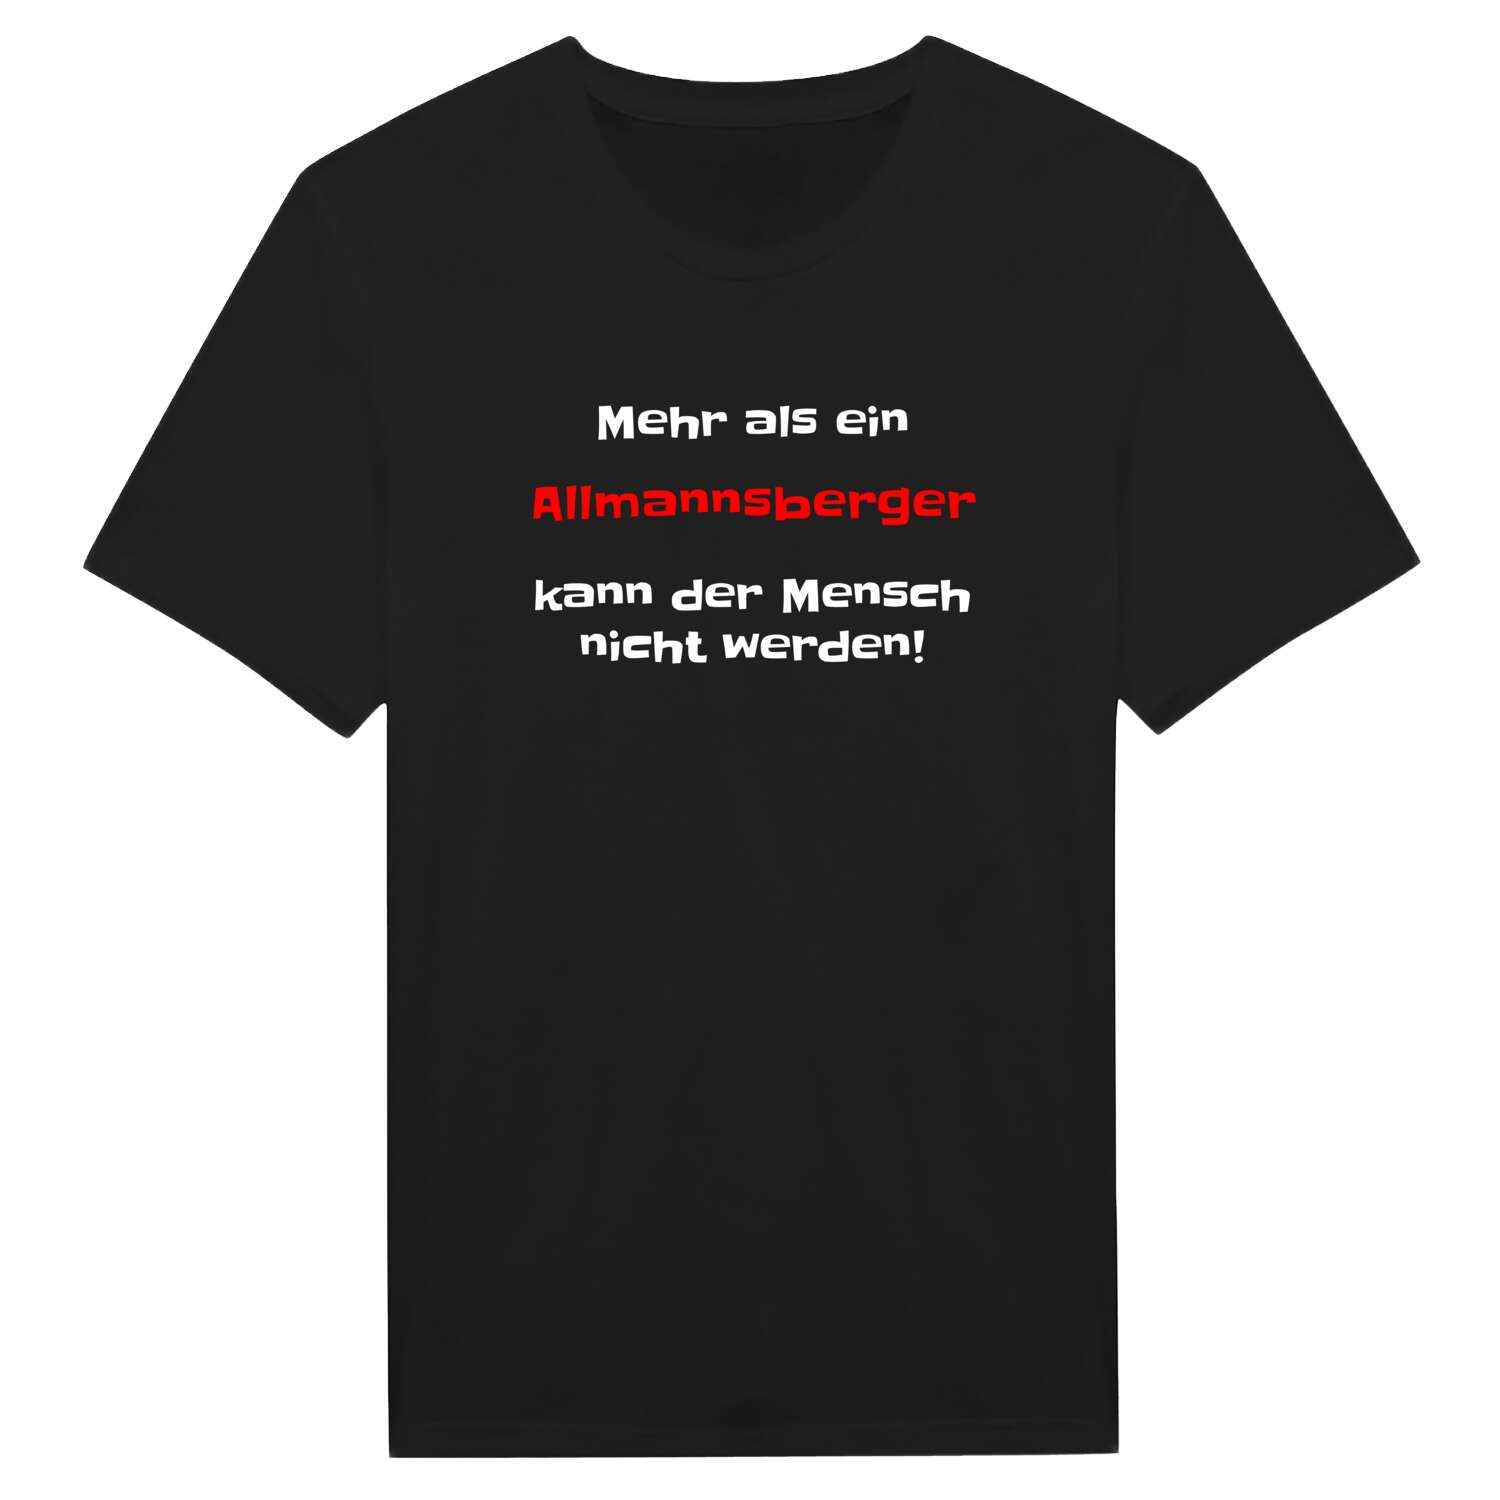 Allmannsberg T-Shirt »Mehr als ein«